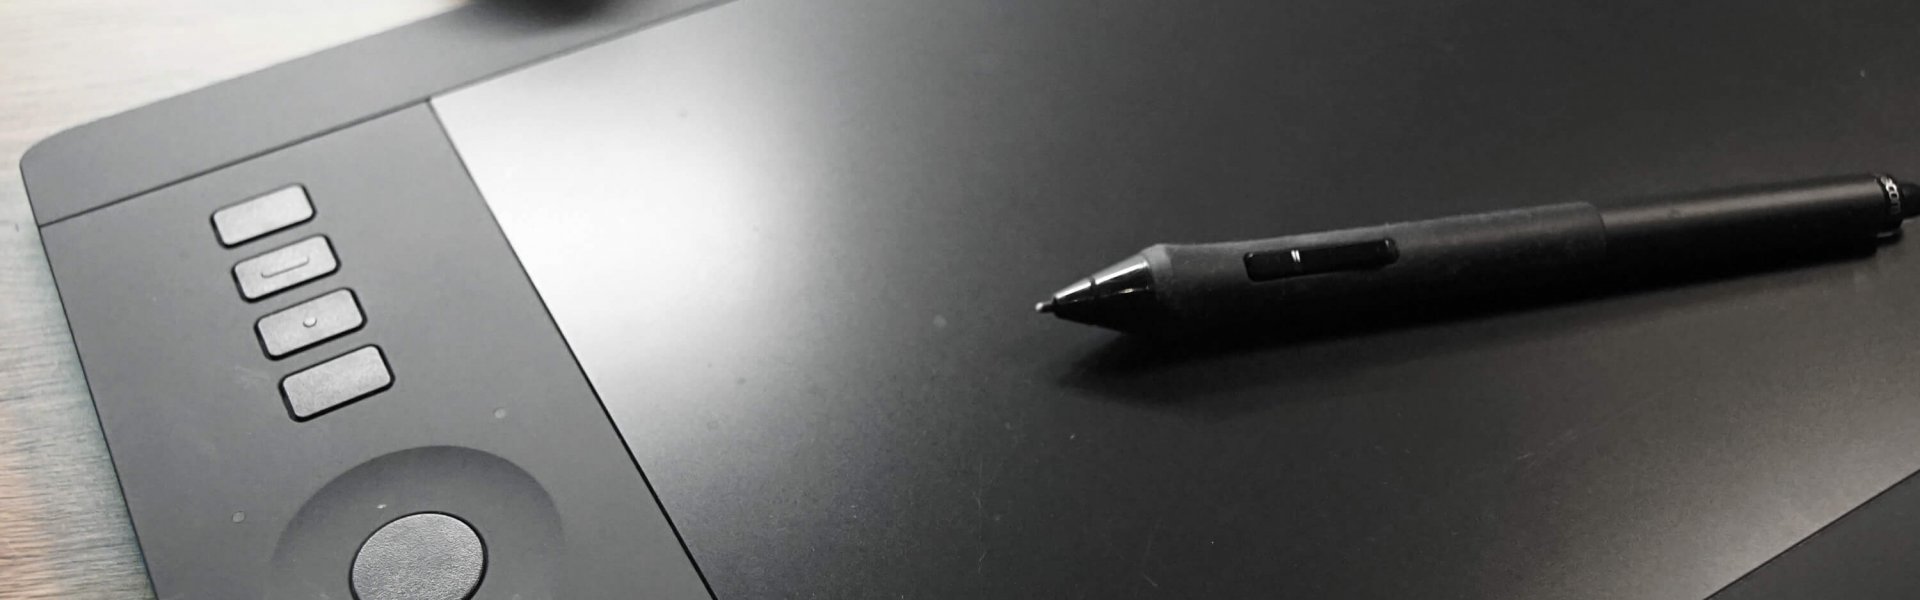 Wacom Grafiktablett mit Stift